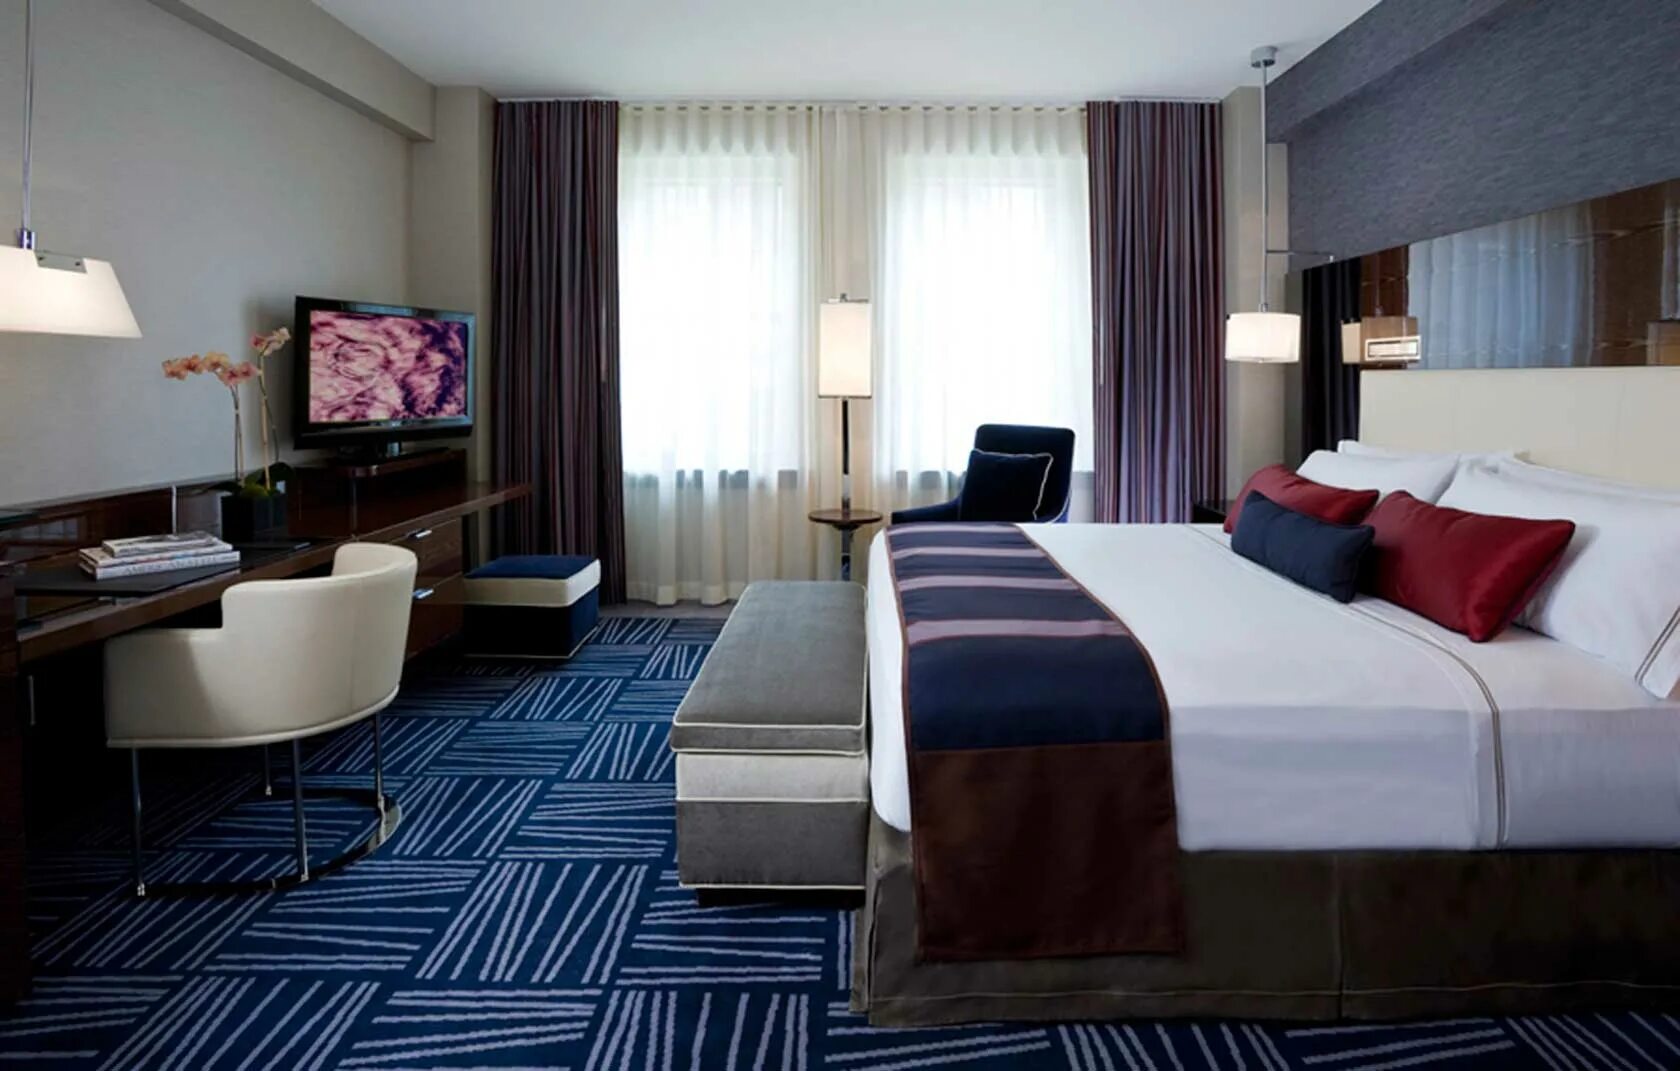 Какой номер отеля. Интерьер номера в гостинице. Отель в современном стиле. Интерьеры гостиниц в современном стиле. Спальня в гостиничном стиле.